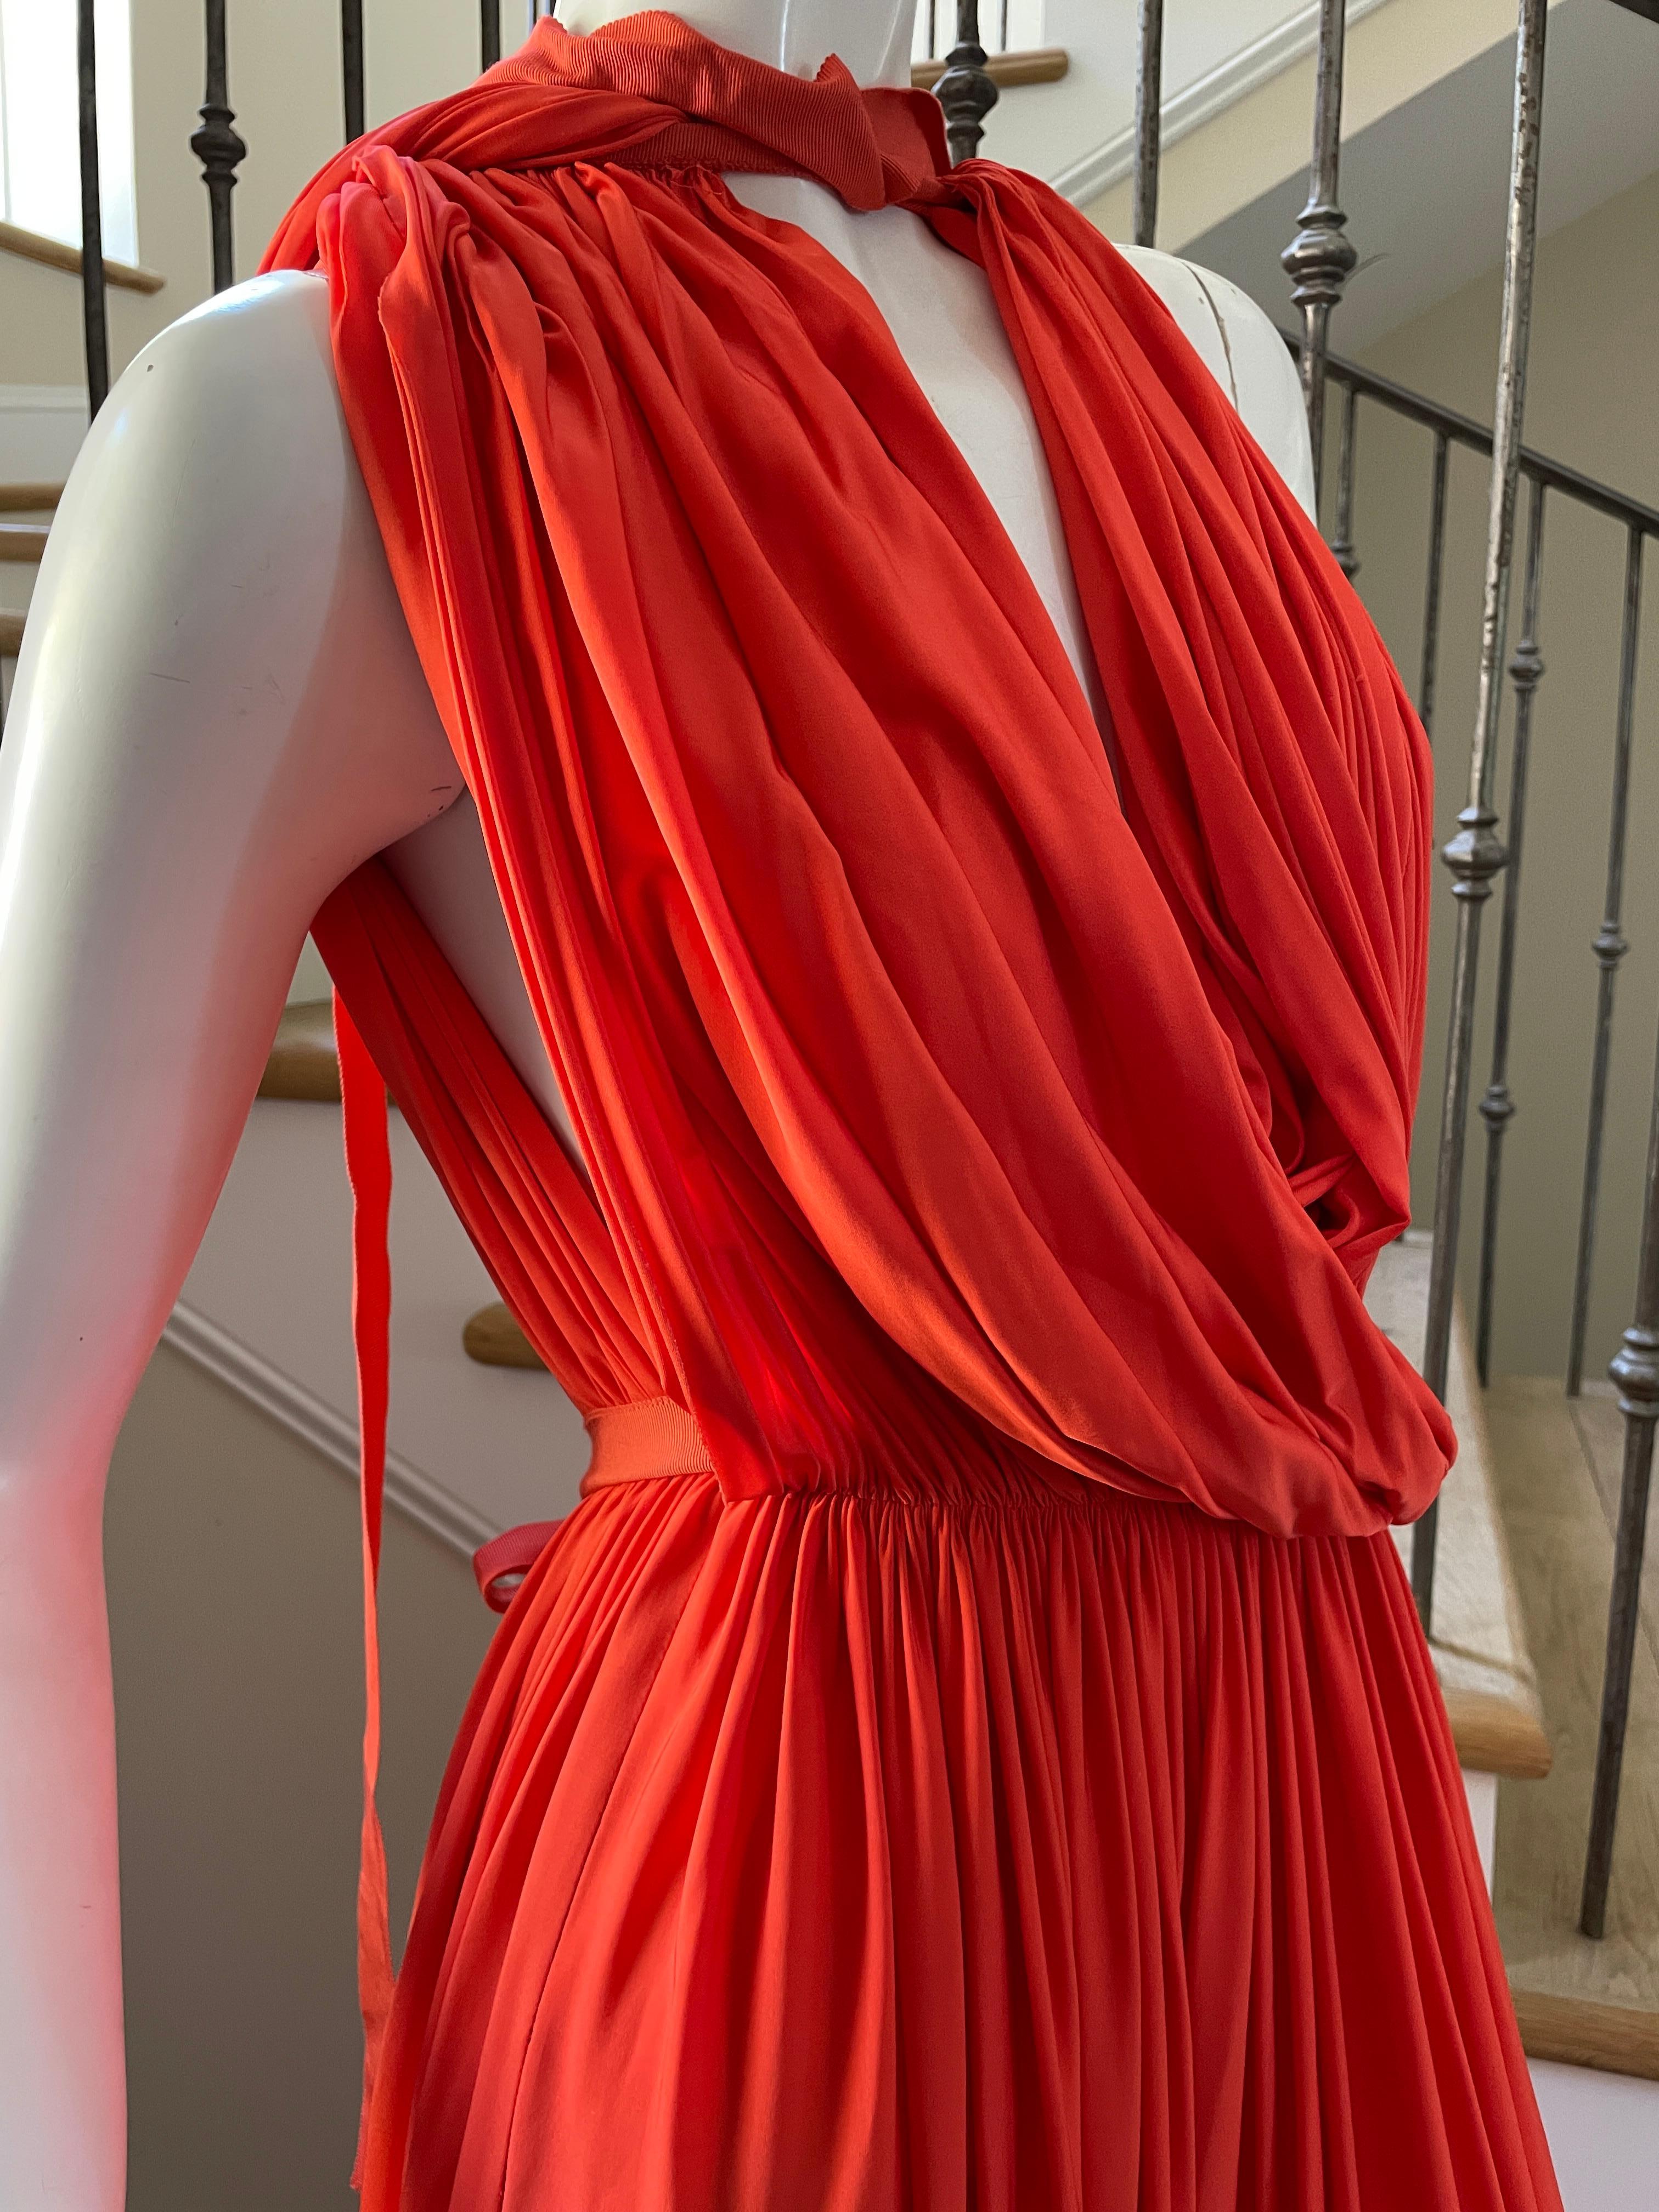 Lanvin by Alber Elbaz Resort 2014 Orange Goddess Gown 1